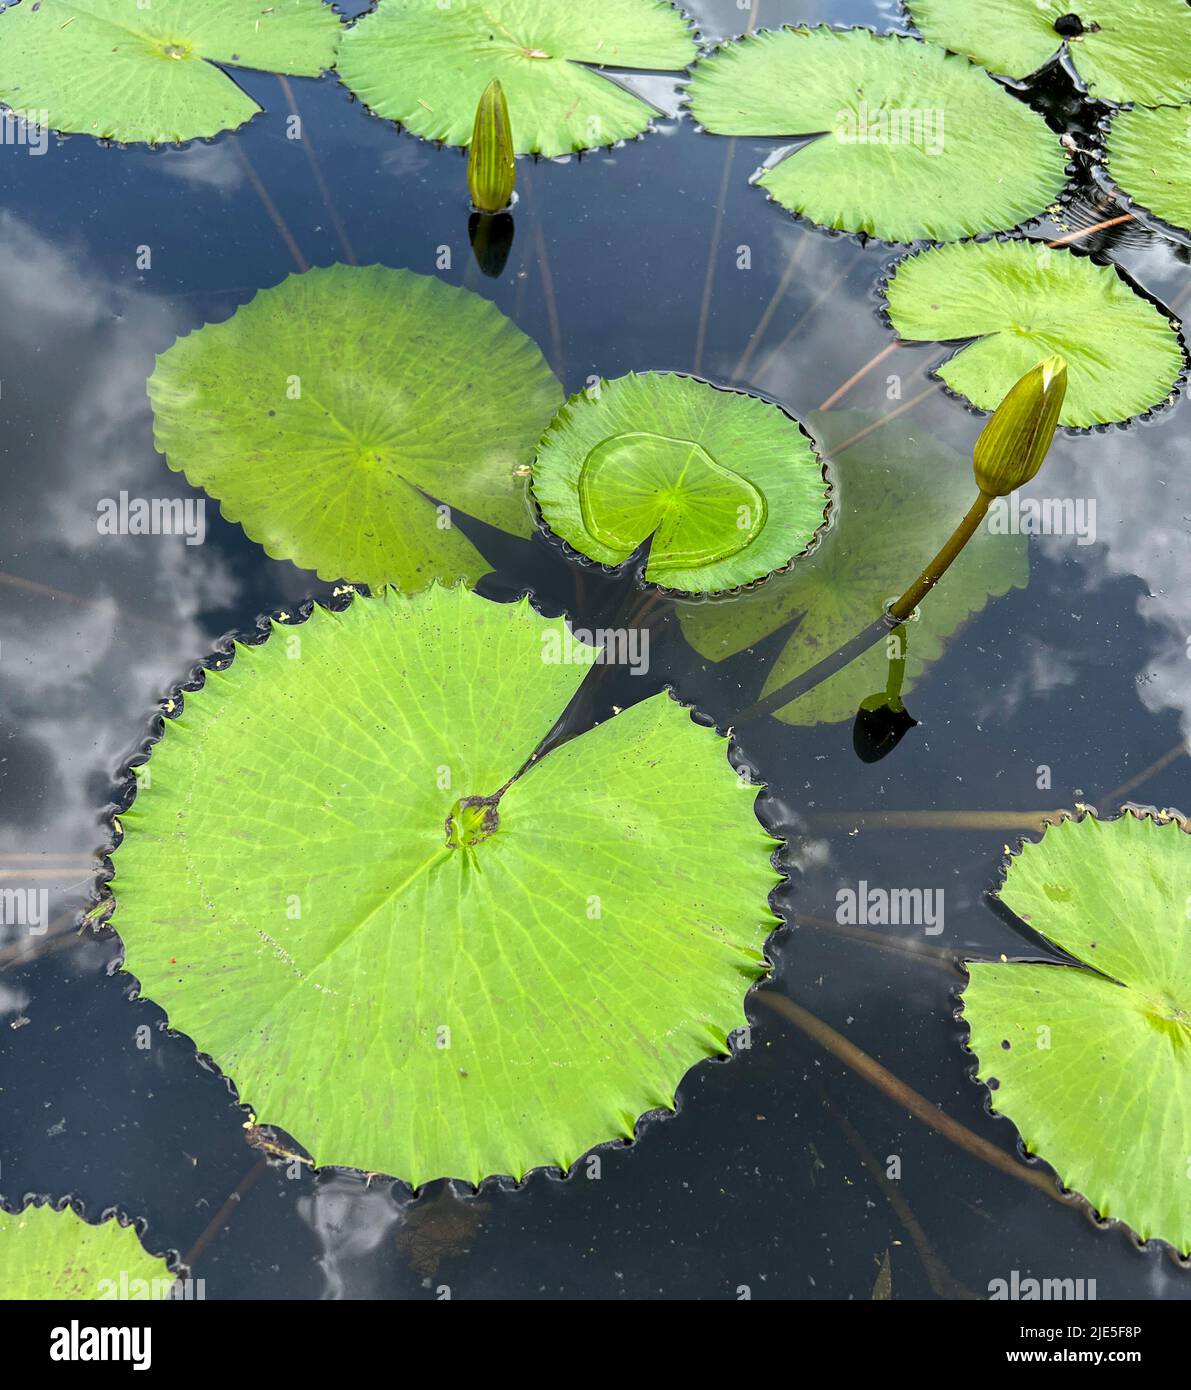 Lotusblätter und zwei junge Lotusknospen im Teich, Wassertropfen auf abgerundeter Form mit gezackter Kante und gespaltenen Markierungen von Lotuslaub, erwachsen unter der Wasseroberfläche Stockfoto